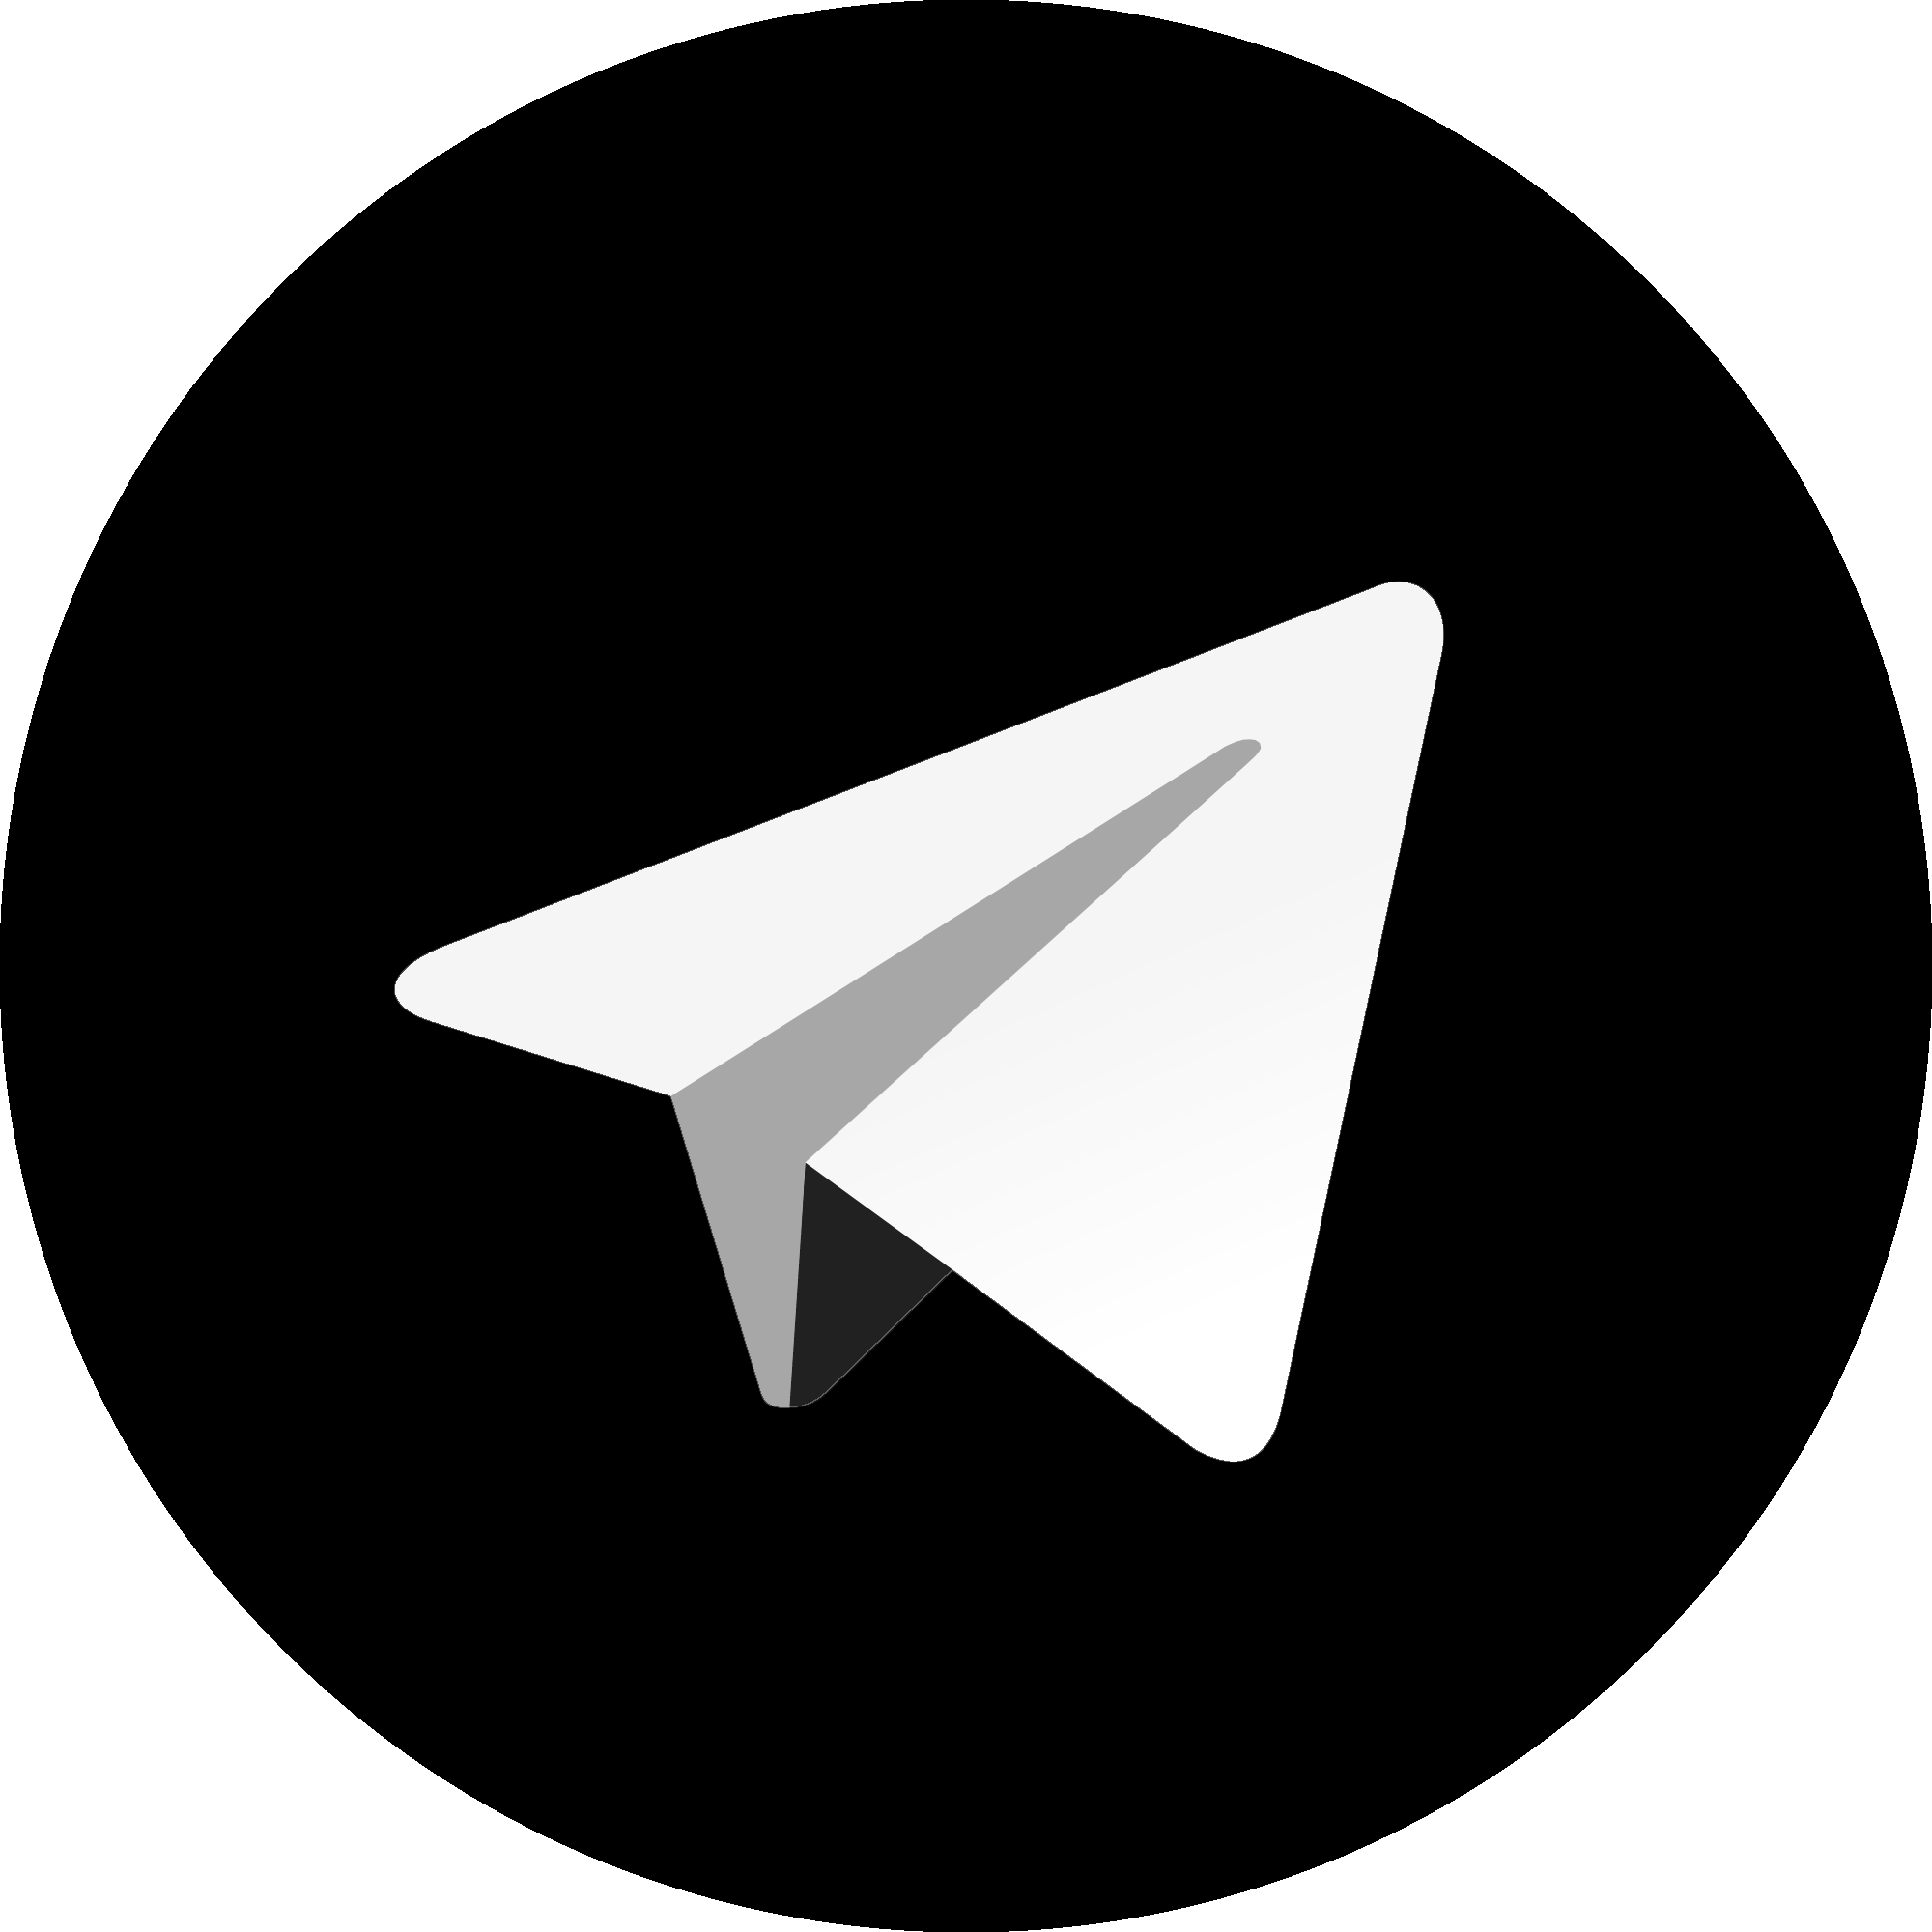 به تلگرام سیاه اعتمادی نیست